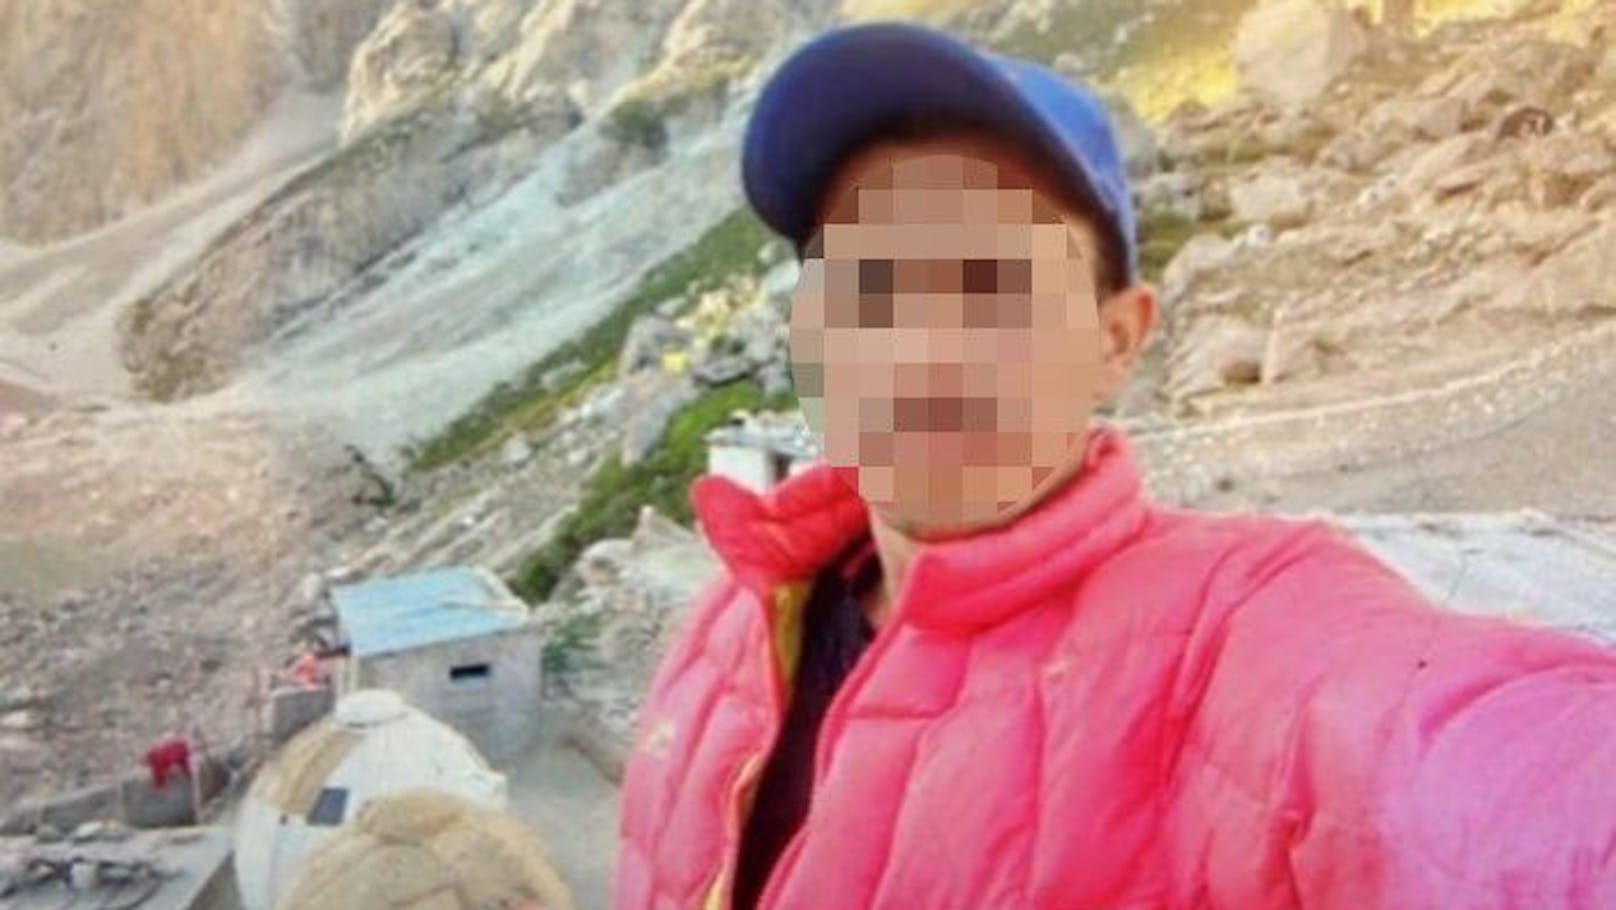 Am "Flaschenhals" half ihm niemand während seines Todeskampfes: Mohammed Hassan verstarb nach einem Lawinenniedergang am K2.